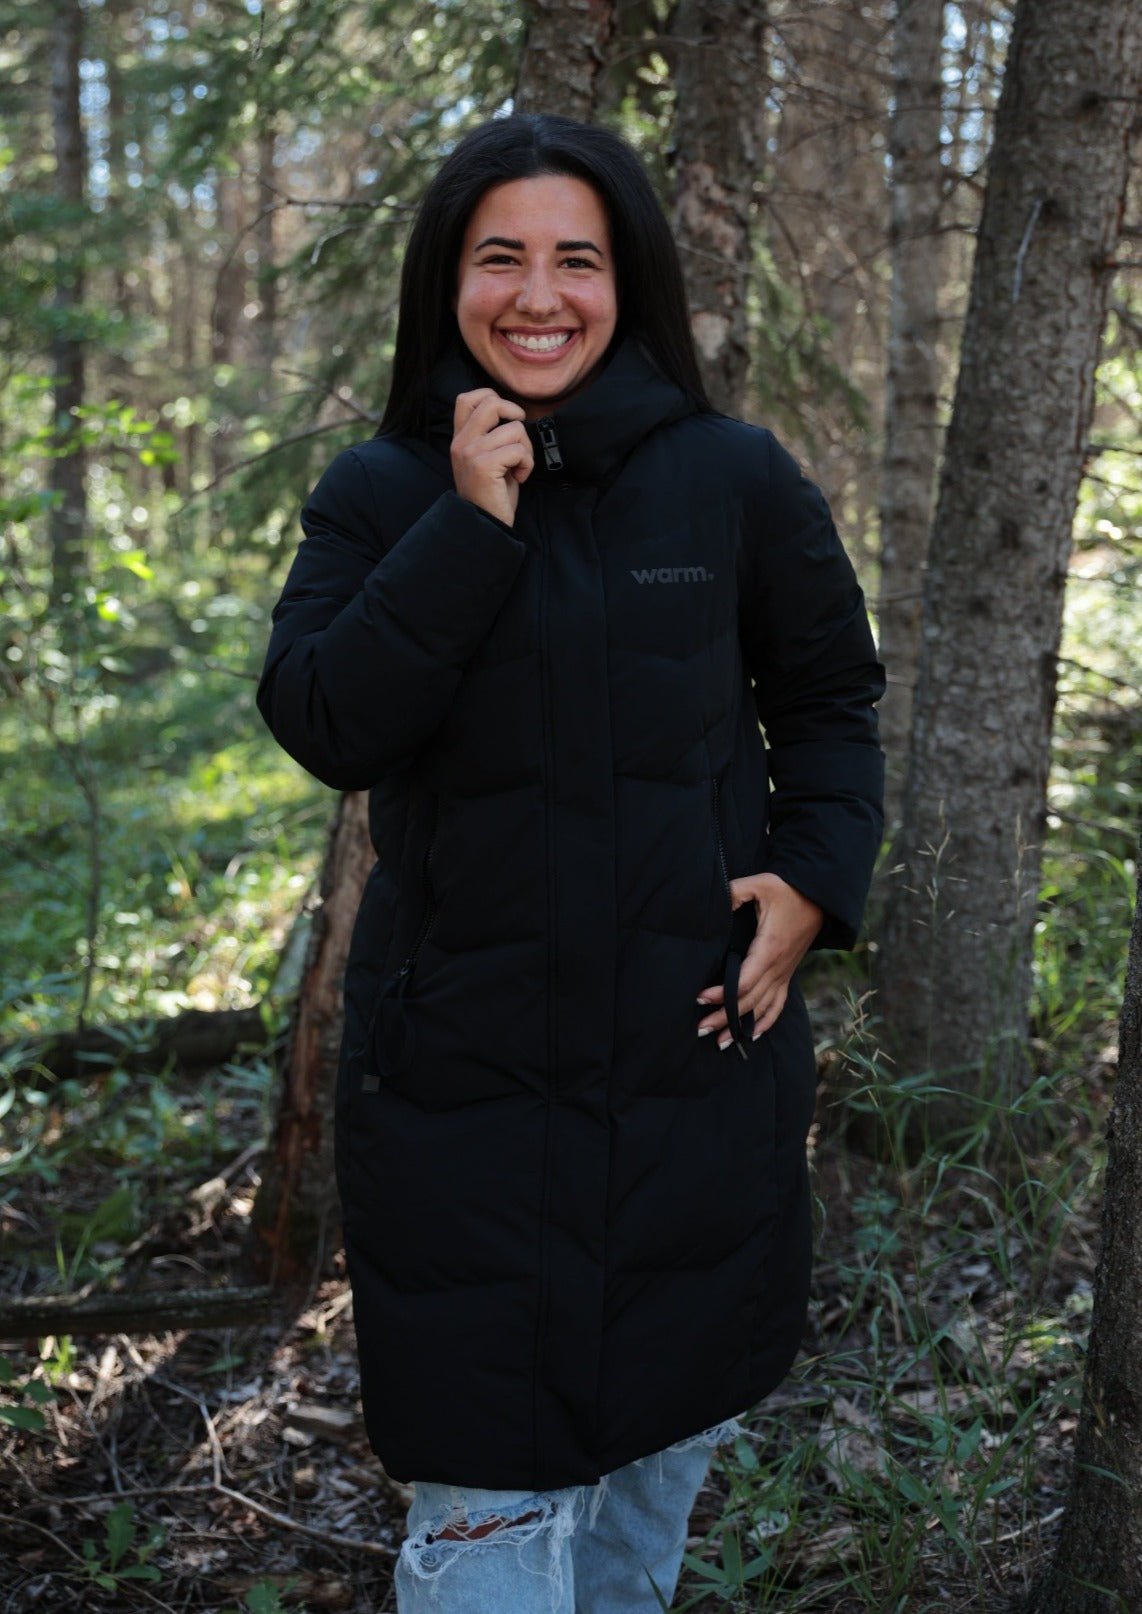 Women's Arctic Duvet Down Winter Coat: 'Deep Warmth' Edition